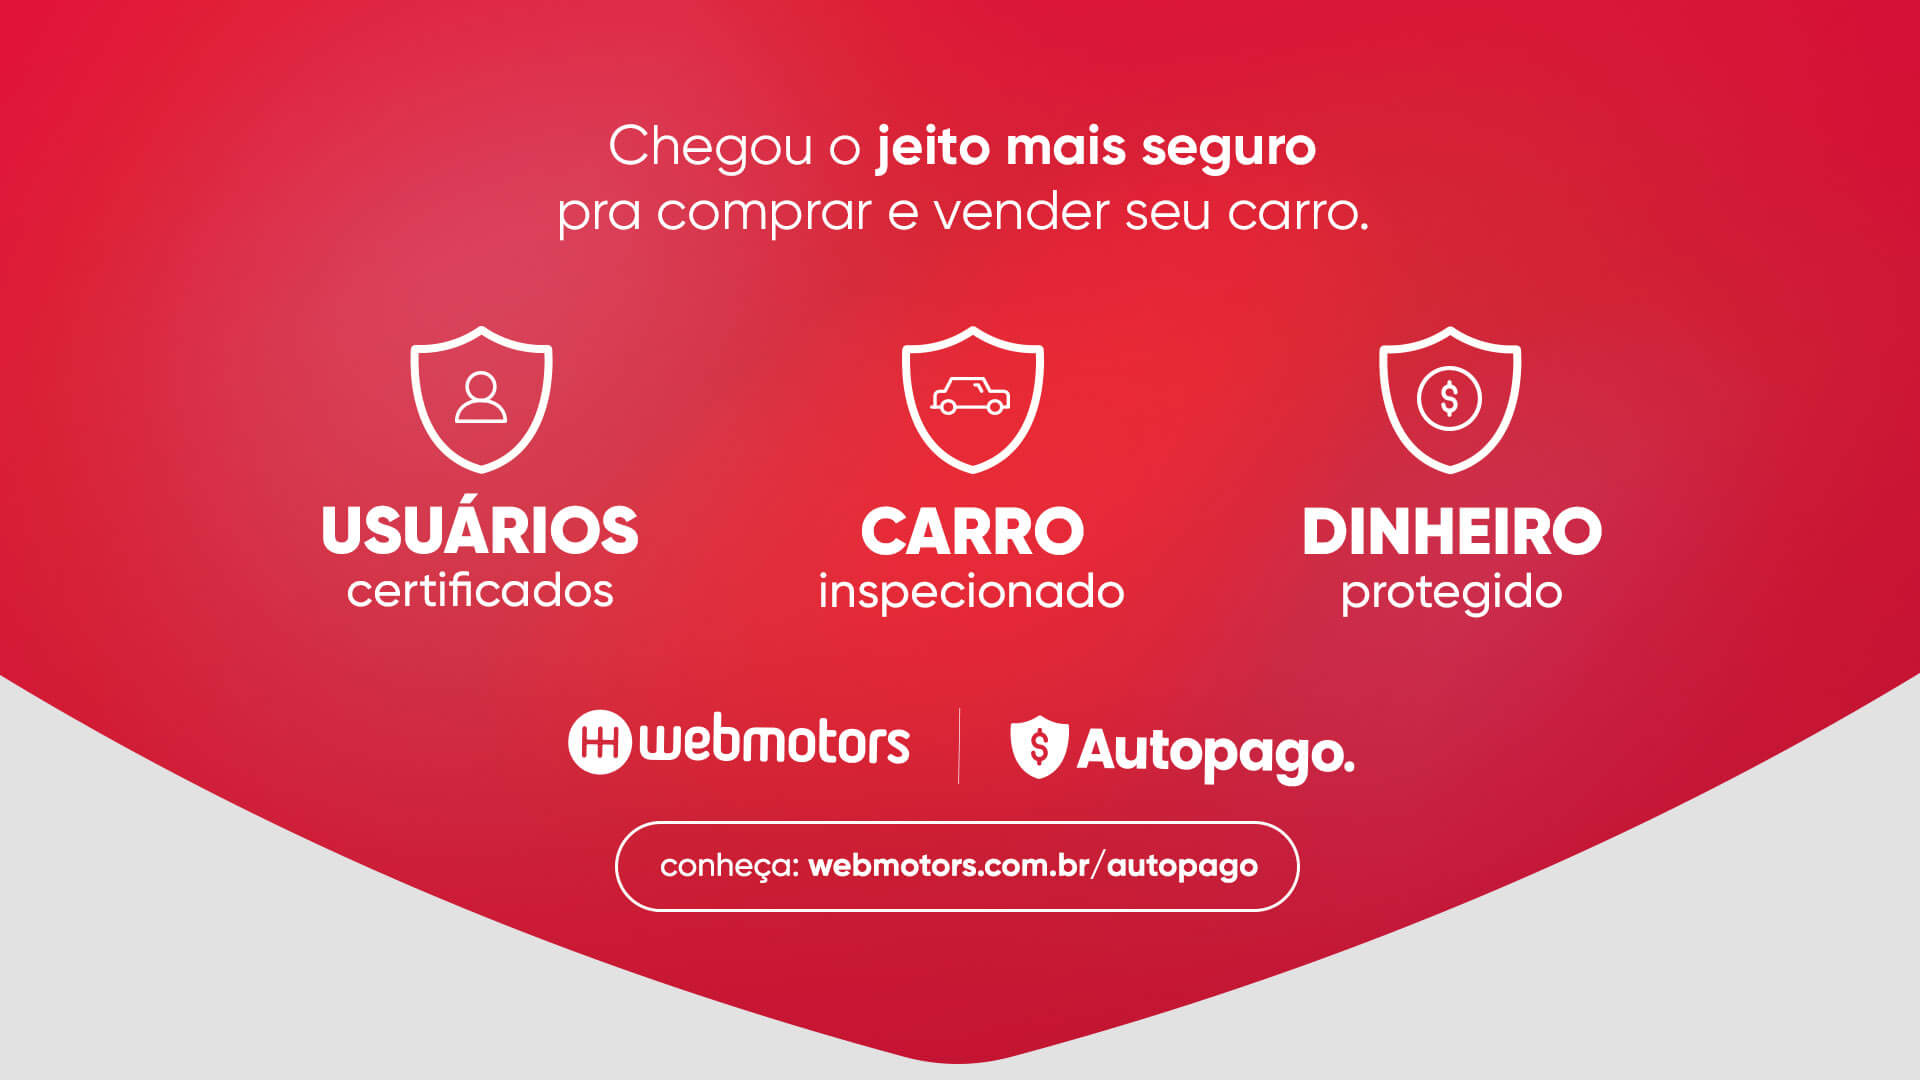  Autopago é um produto exclusivo Webmotors